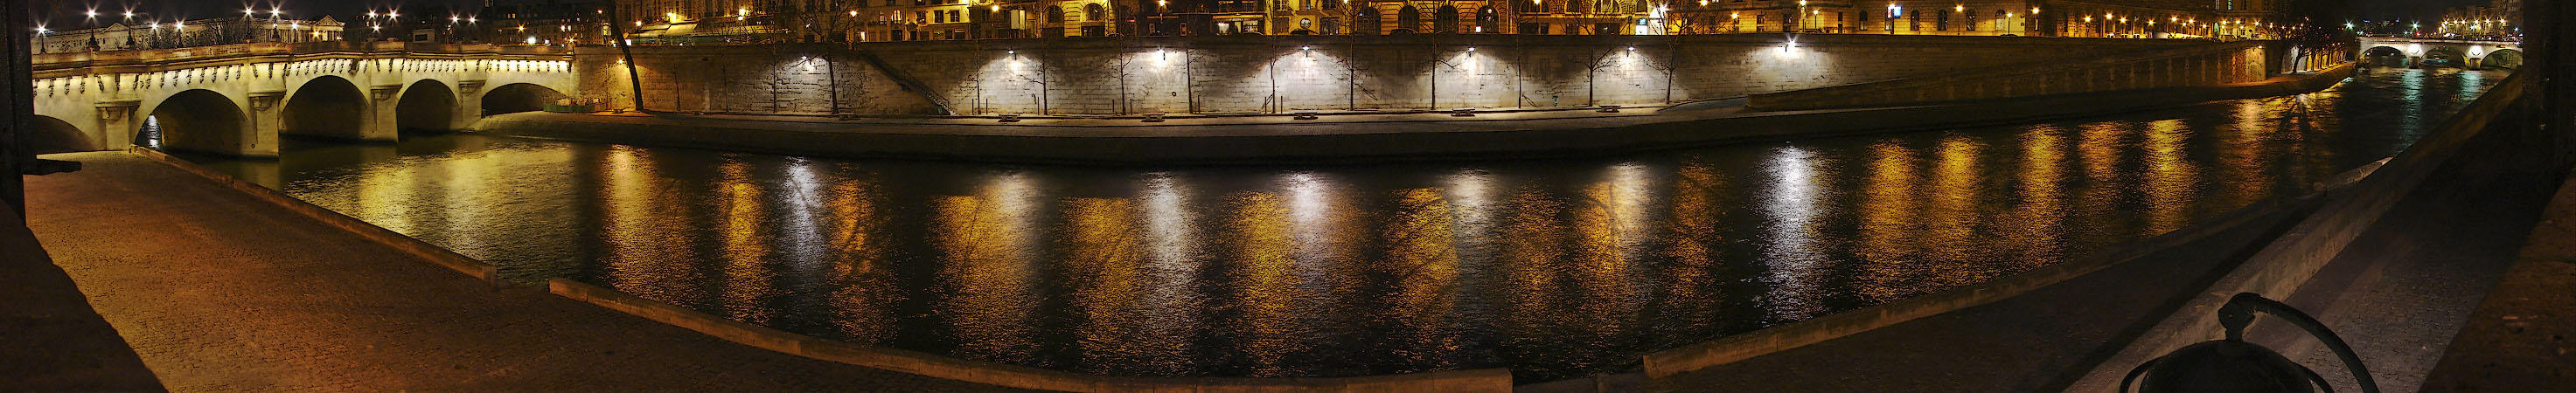 Un panorama du pont Neuf, pont Saint-Michel, quai des Orfèvres, île de la Cité et la Seine le soir.